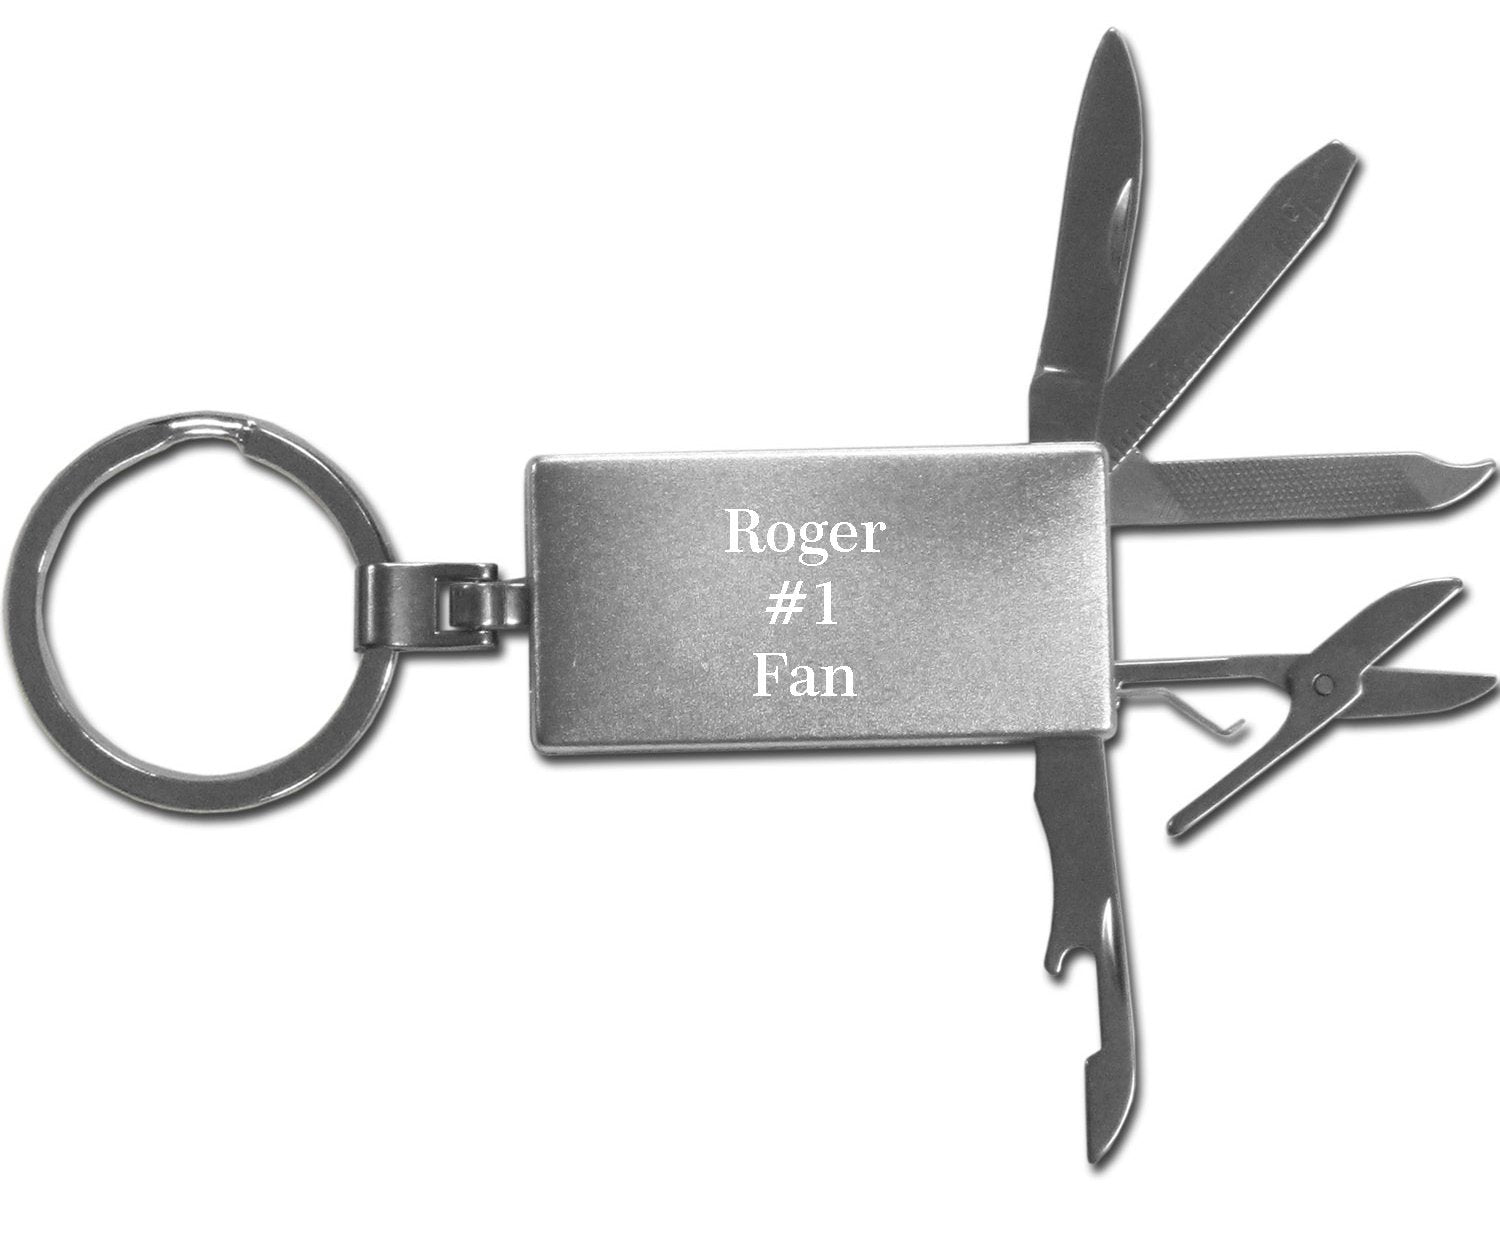 Carolina Panthers Multi-tool Key Chain